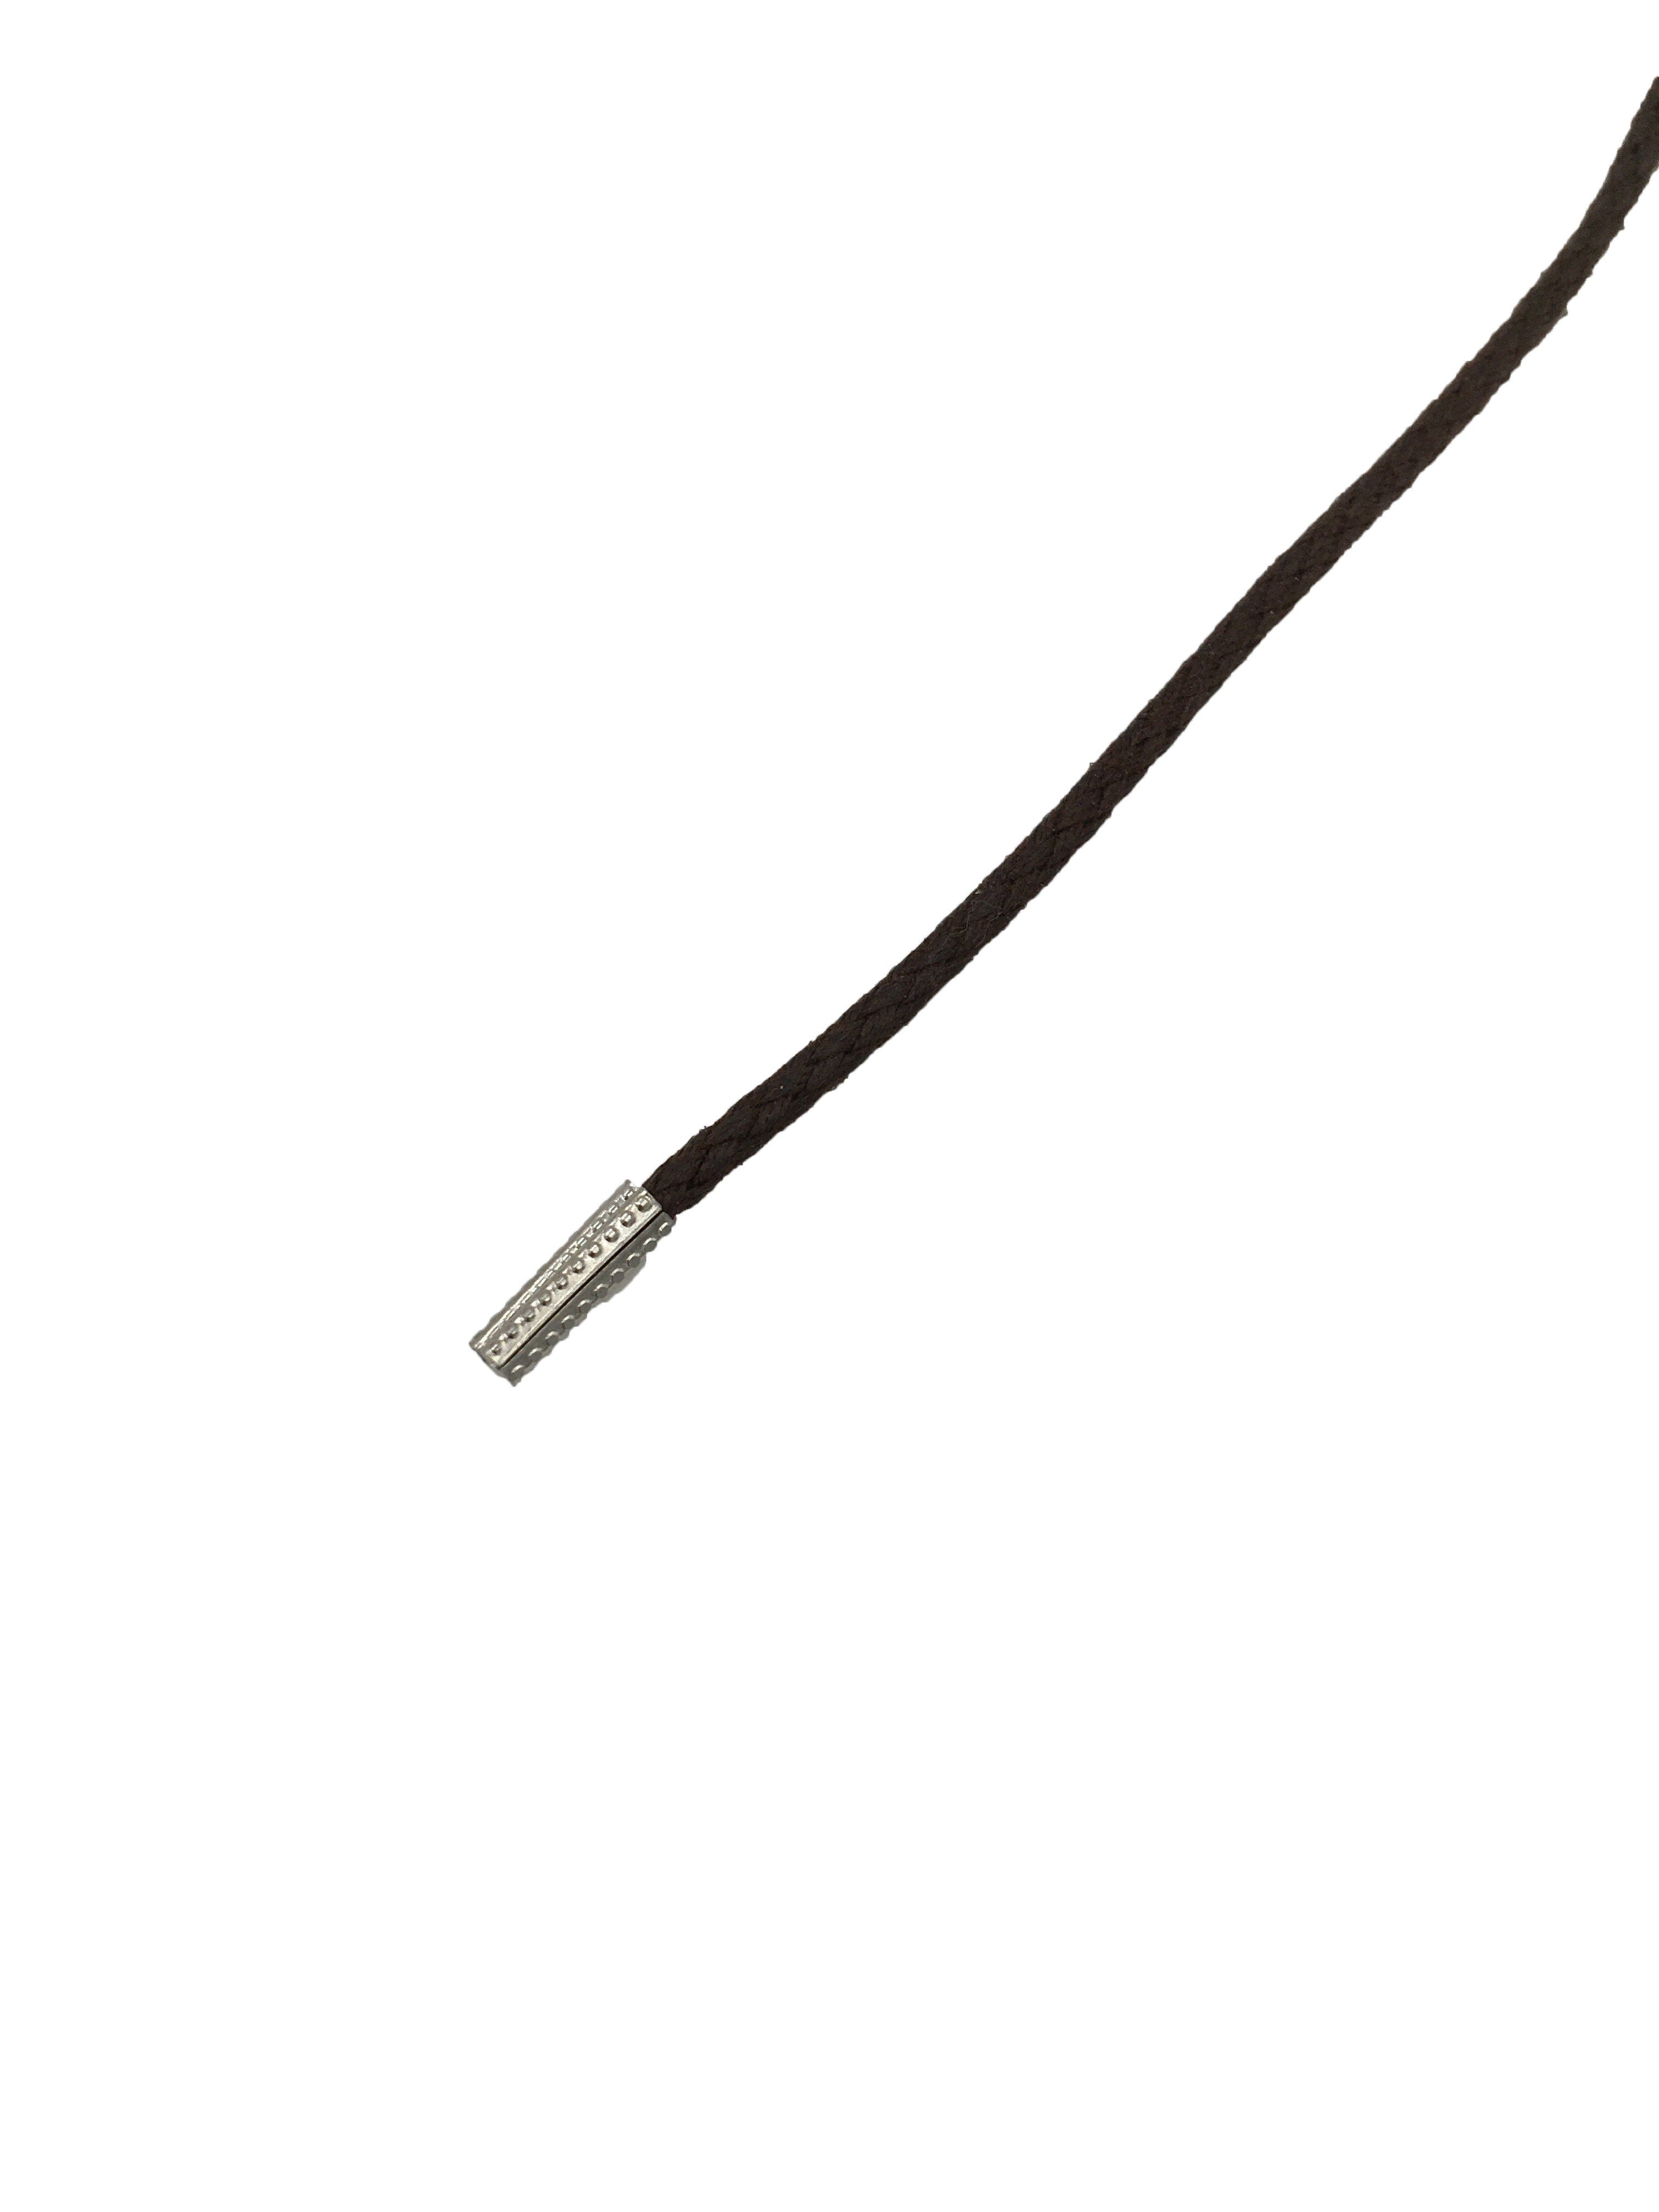 Rema Schnürsenkel Rema Schnürsenkel Dunkelbraun - rund - gewachst - Kordel - ca. 2,5 mm dünn für Sie nach Wunschlänge geschnitten und mit Metallenden versehen